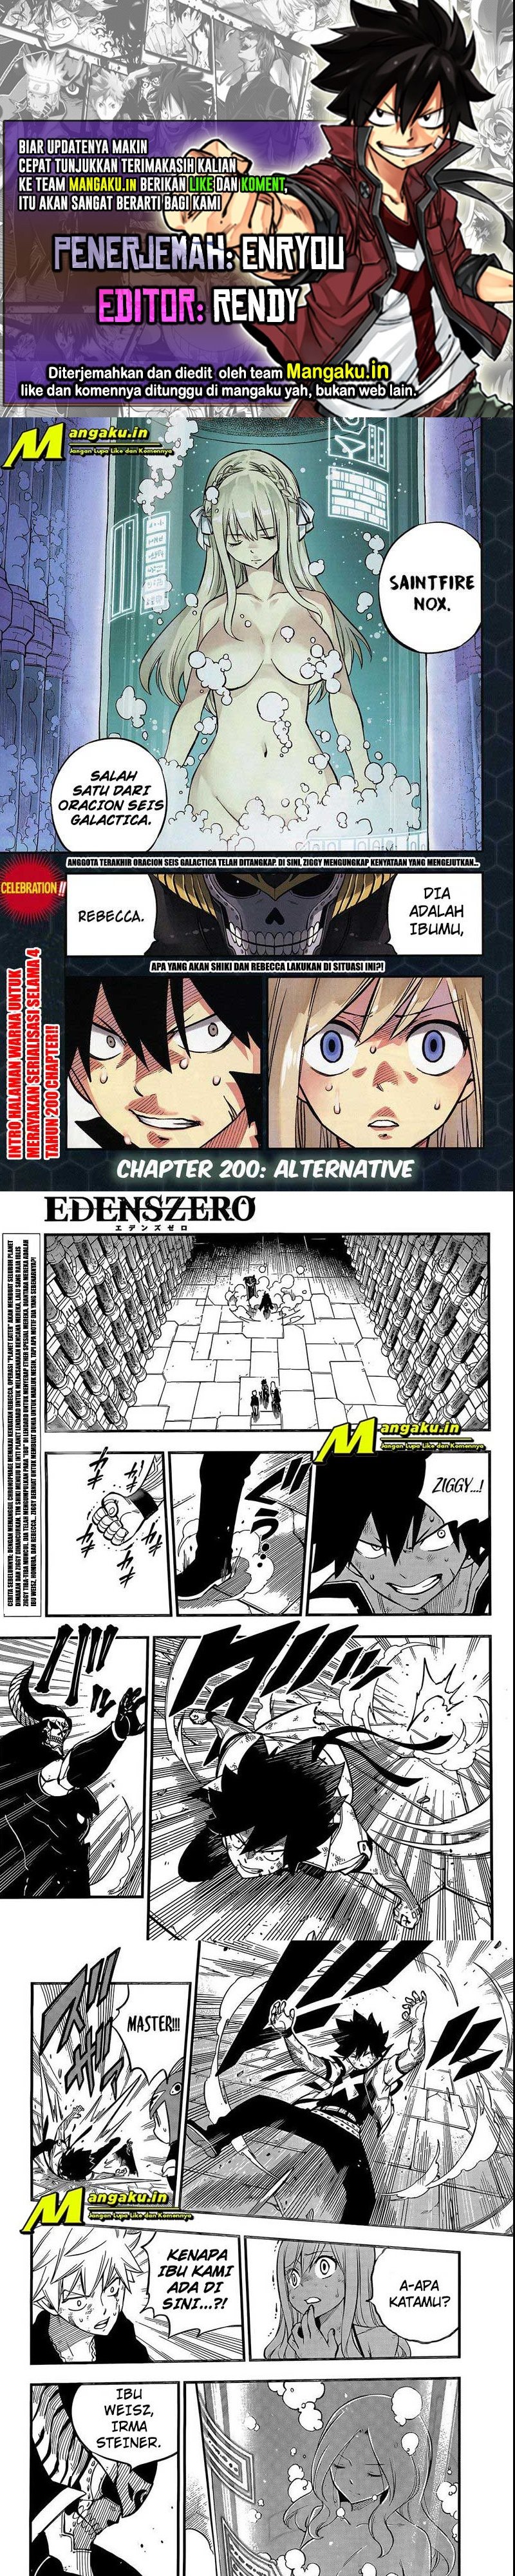 Eden's Zero Chapter 200 1